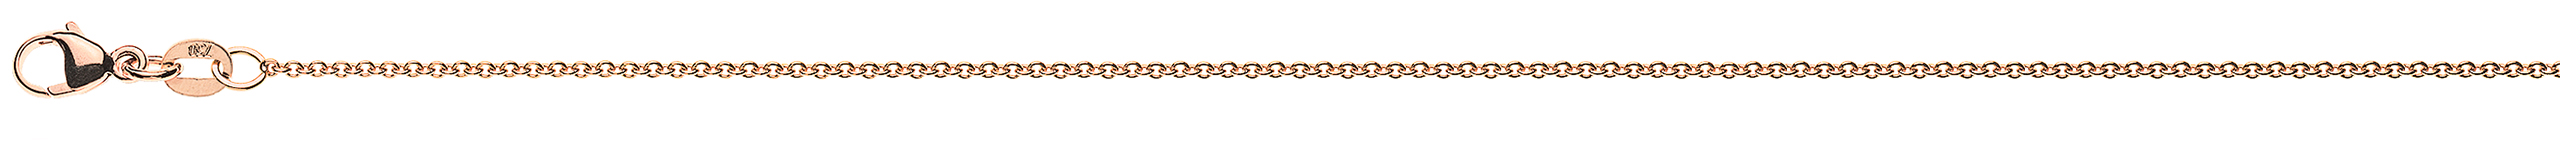 AURONOS Prestige Bracelet Round Anchor 18K Rose Gold 19cm 1.3mm